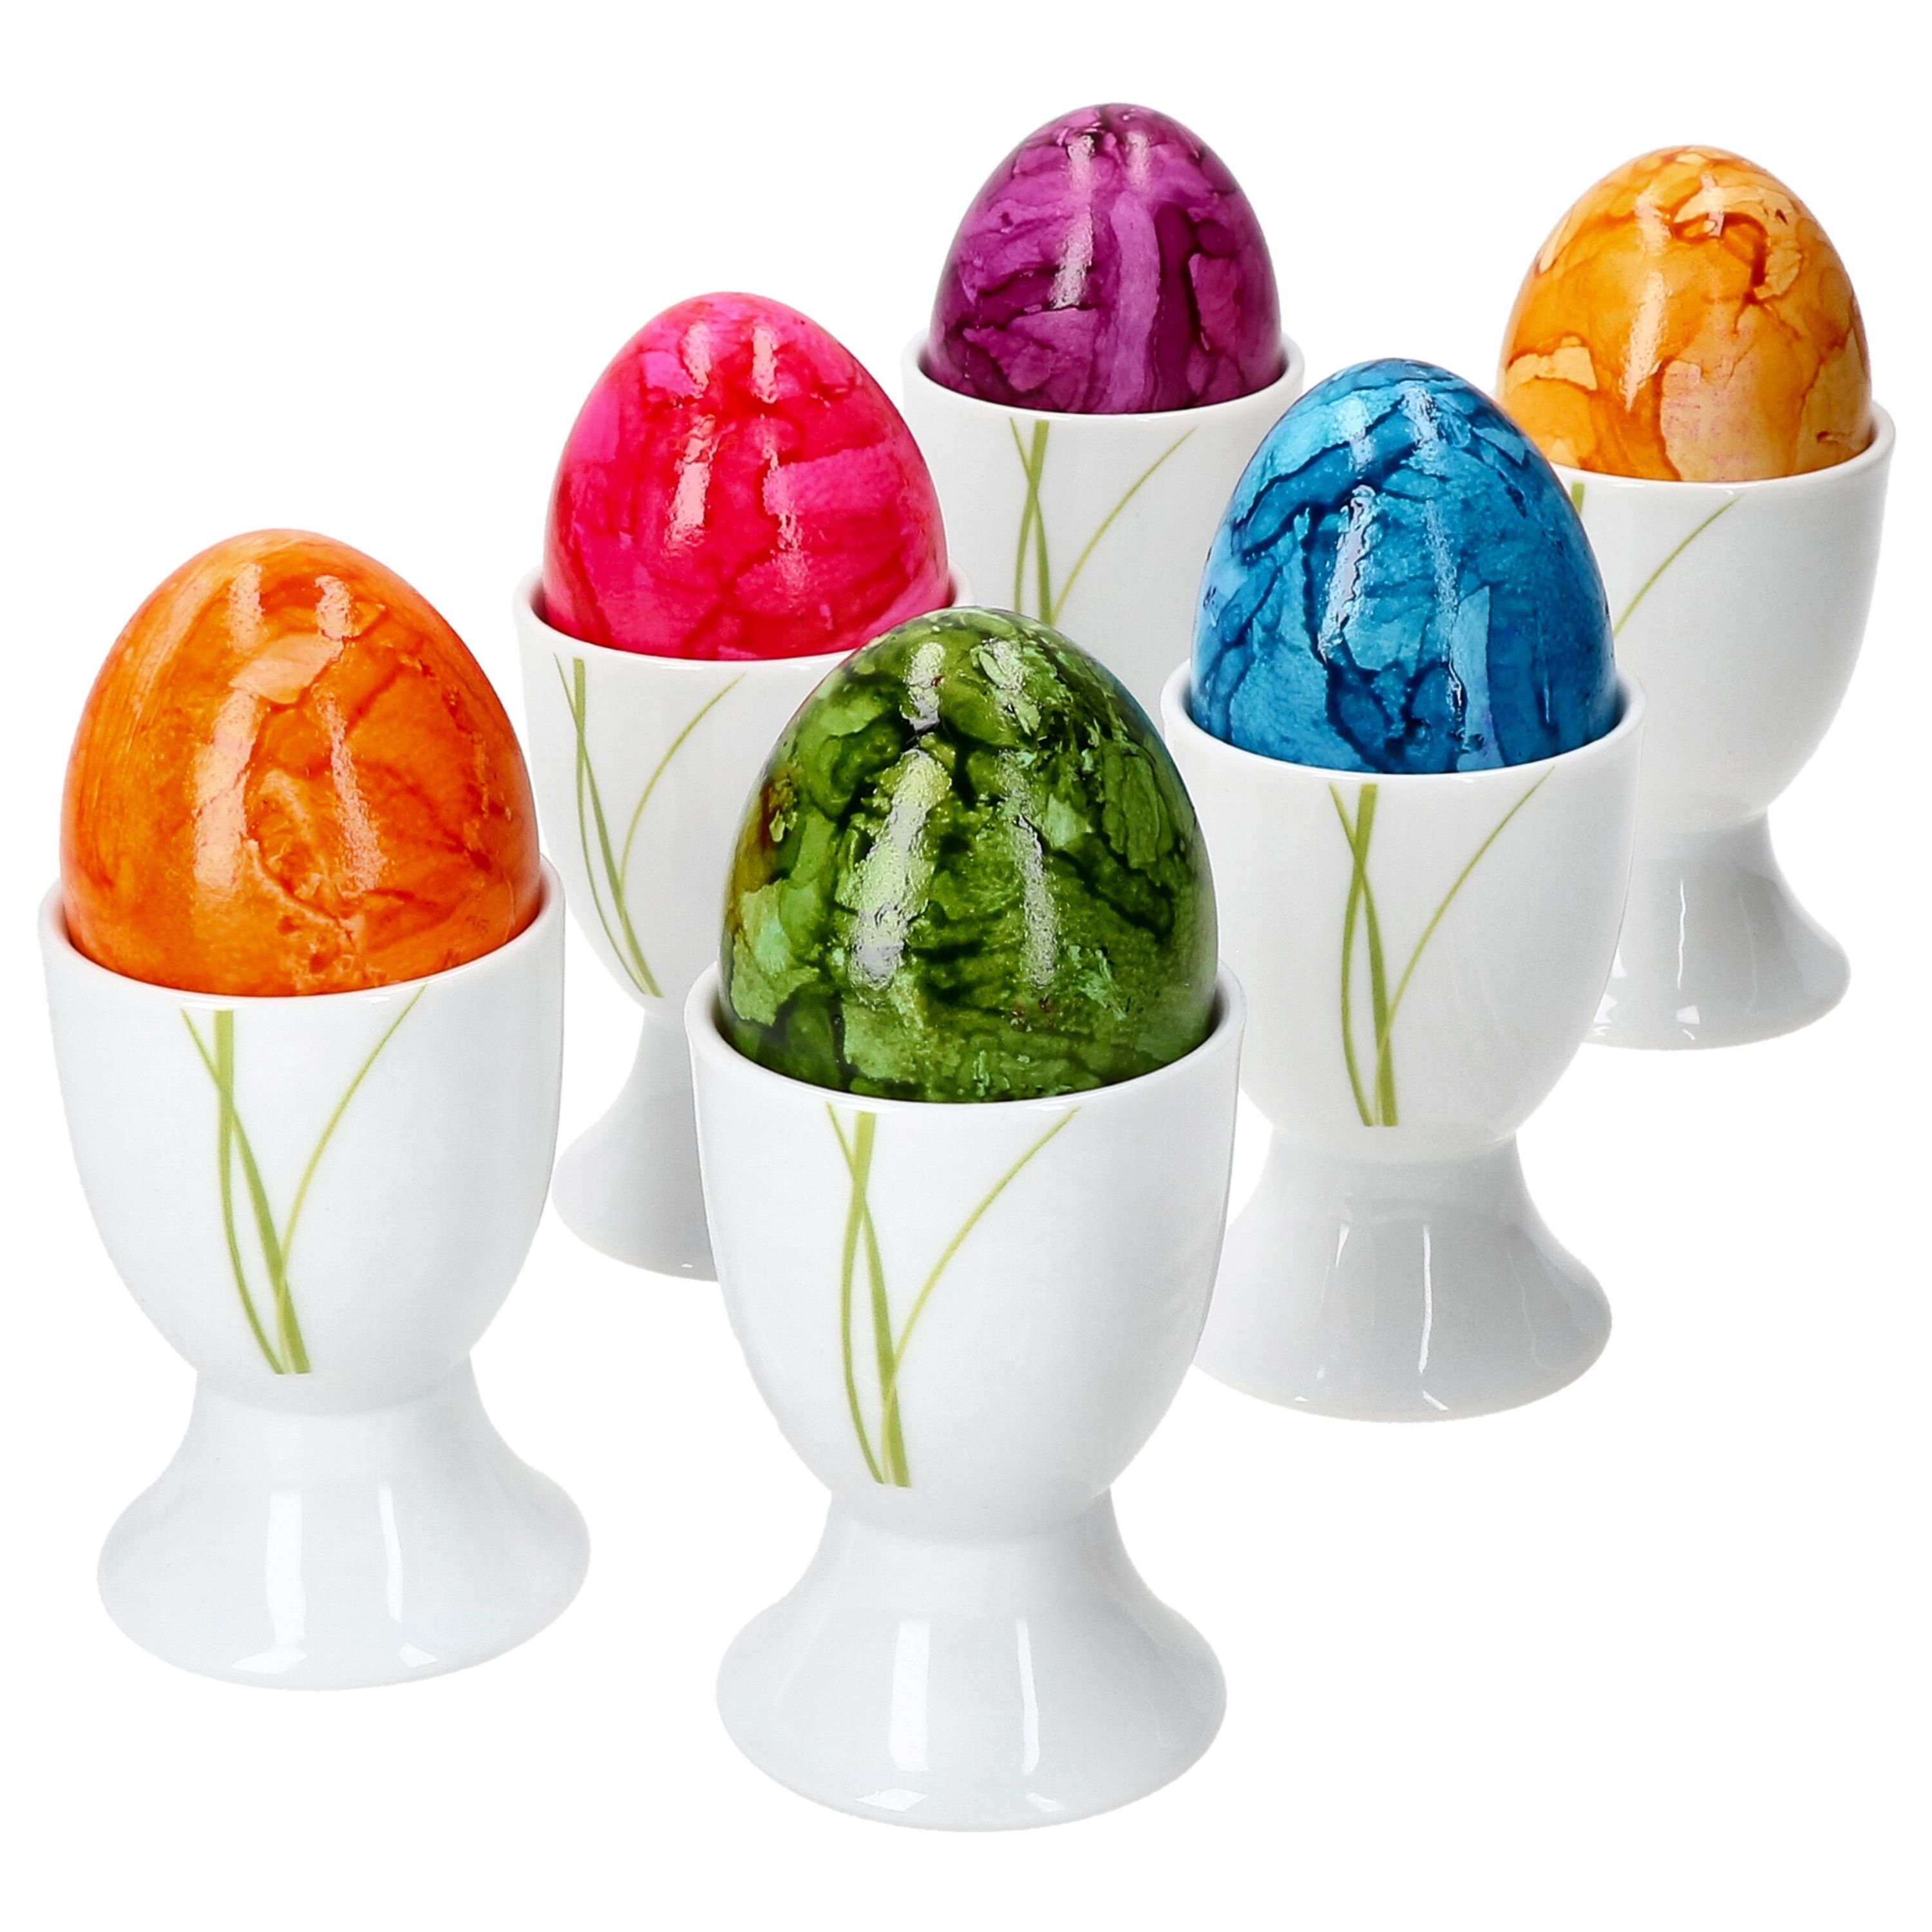 Eierhalter 6x Well Eierbecher Grashalm Eierbecher van Easter Porzellan Bali Eierständer